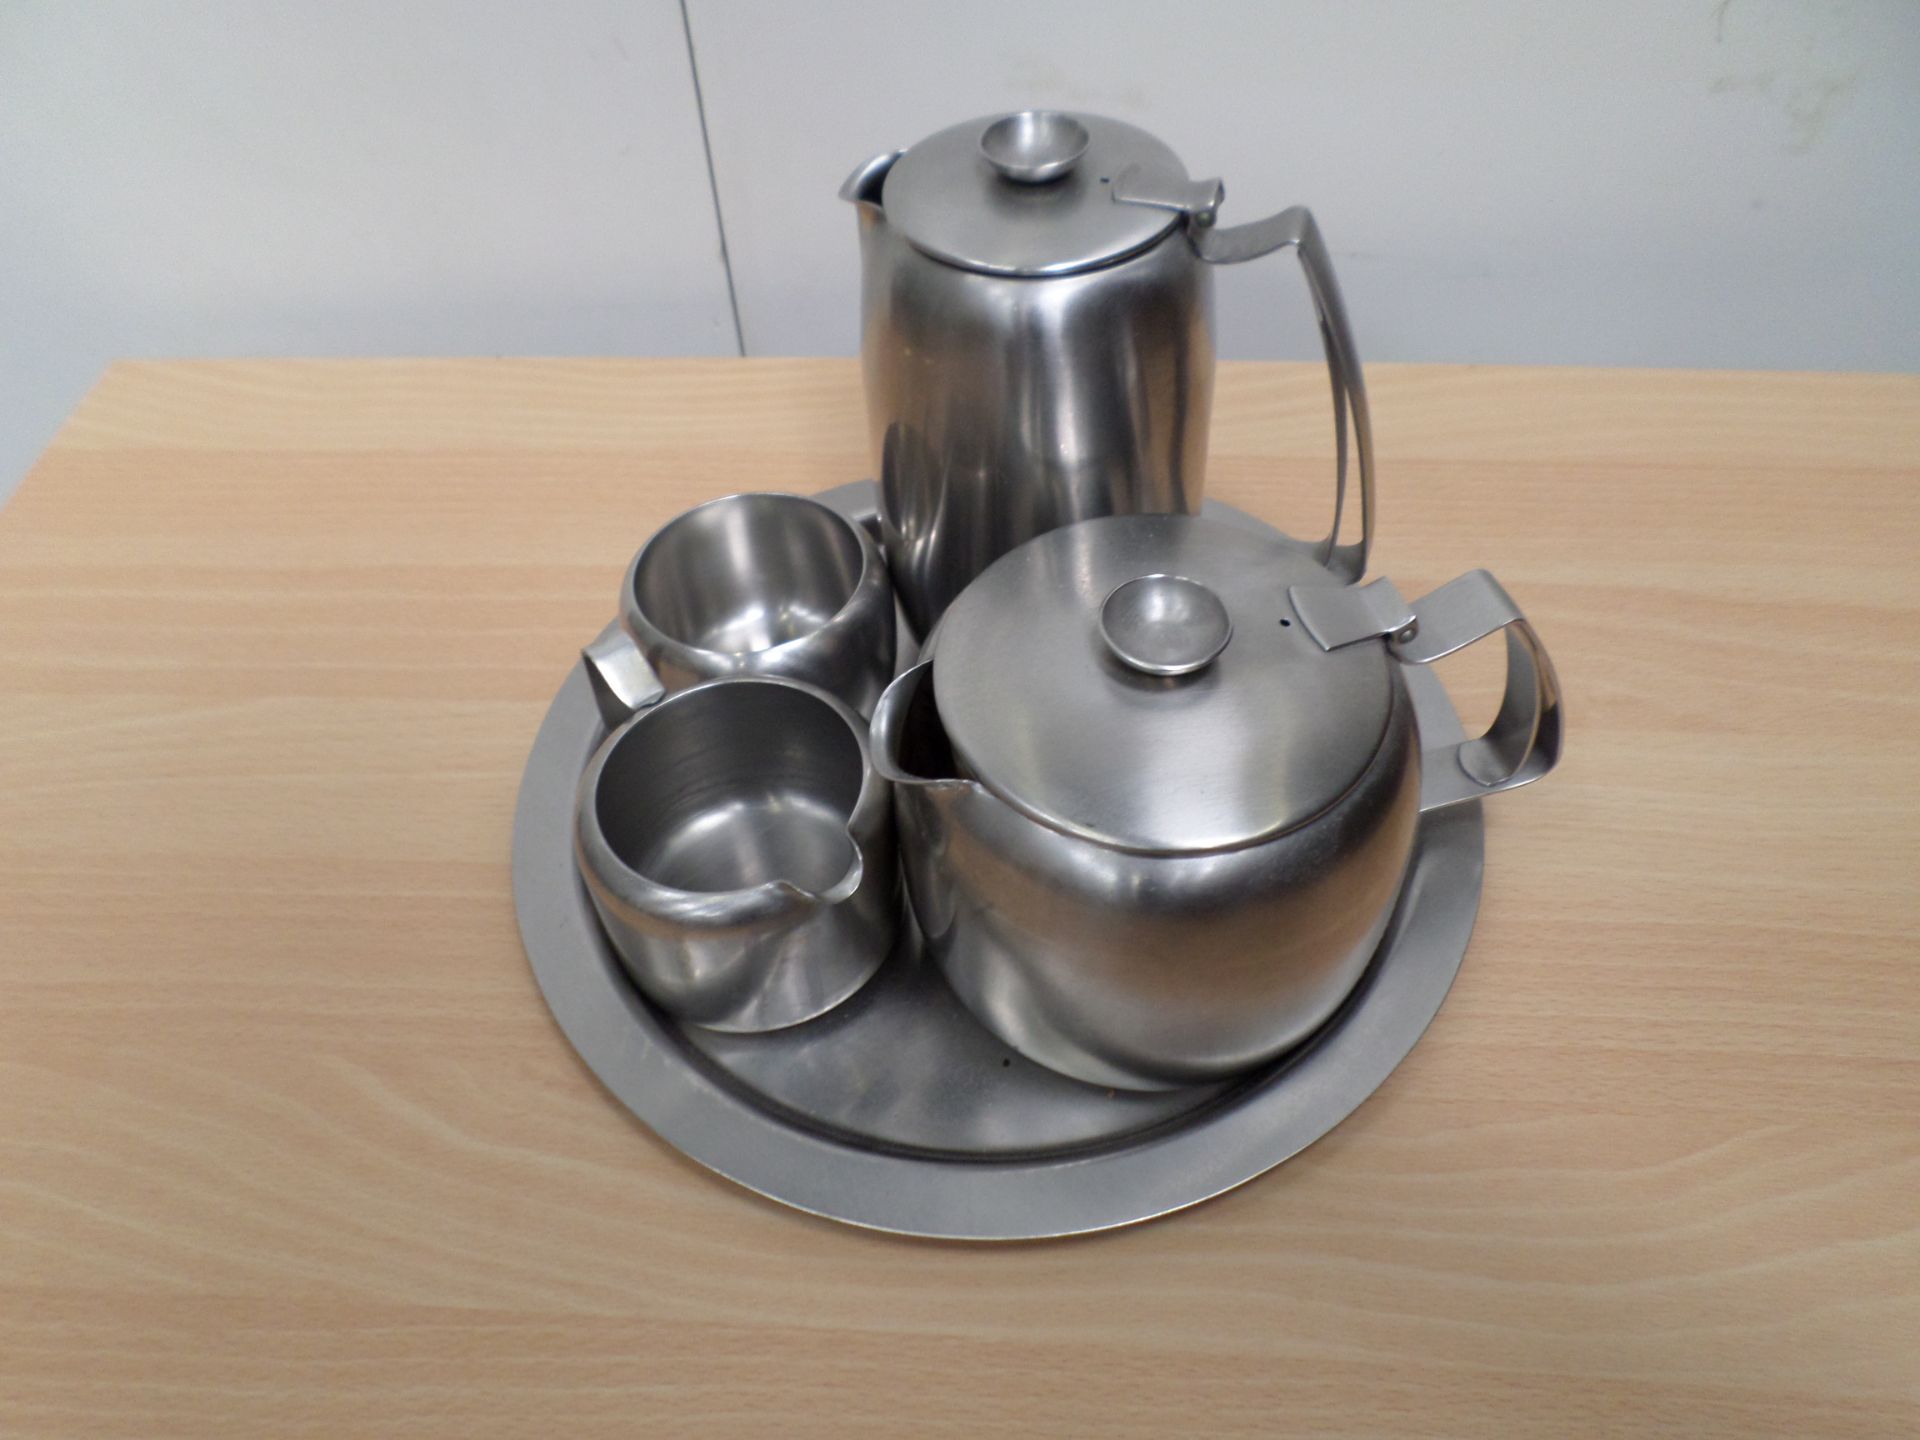 Stainless steel tea set